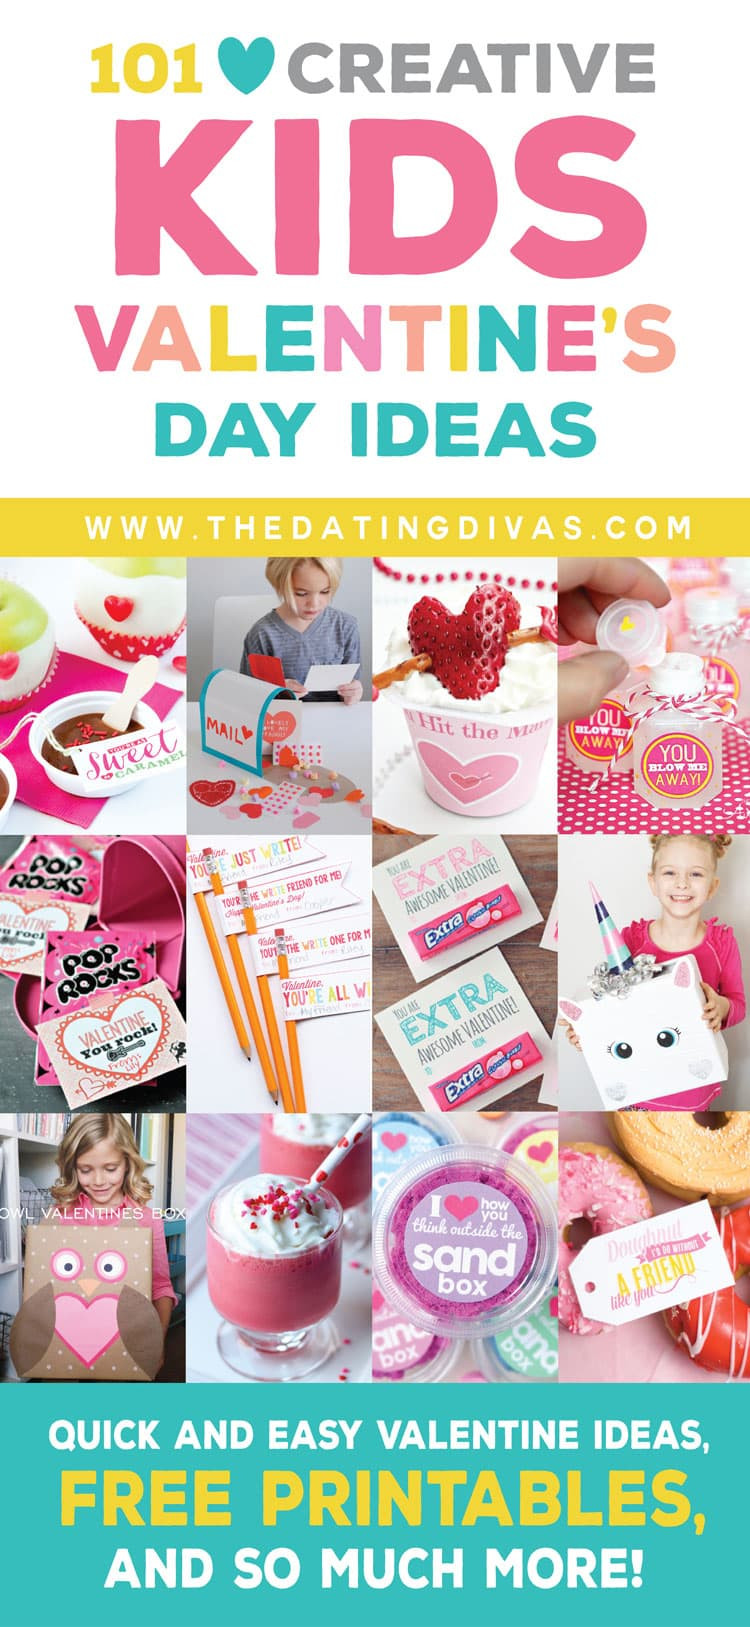 Child Valentine Gift Ideas
 Kids Valentine s Day Ideas From The Dating Divas